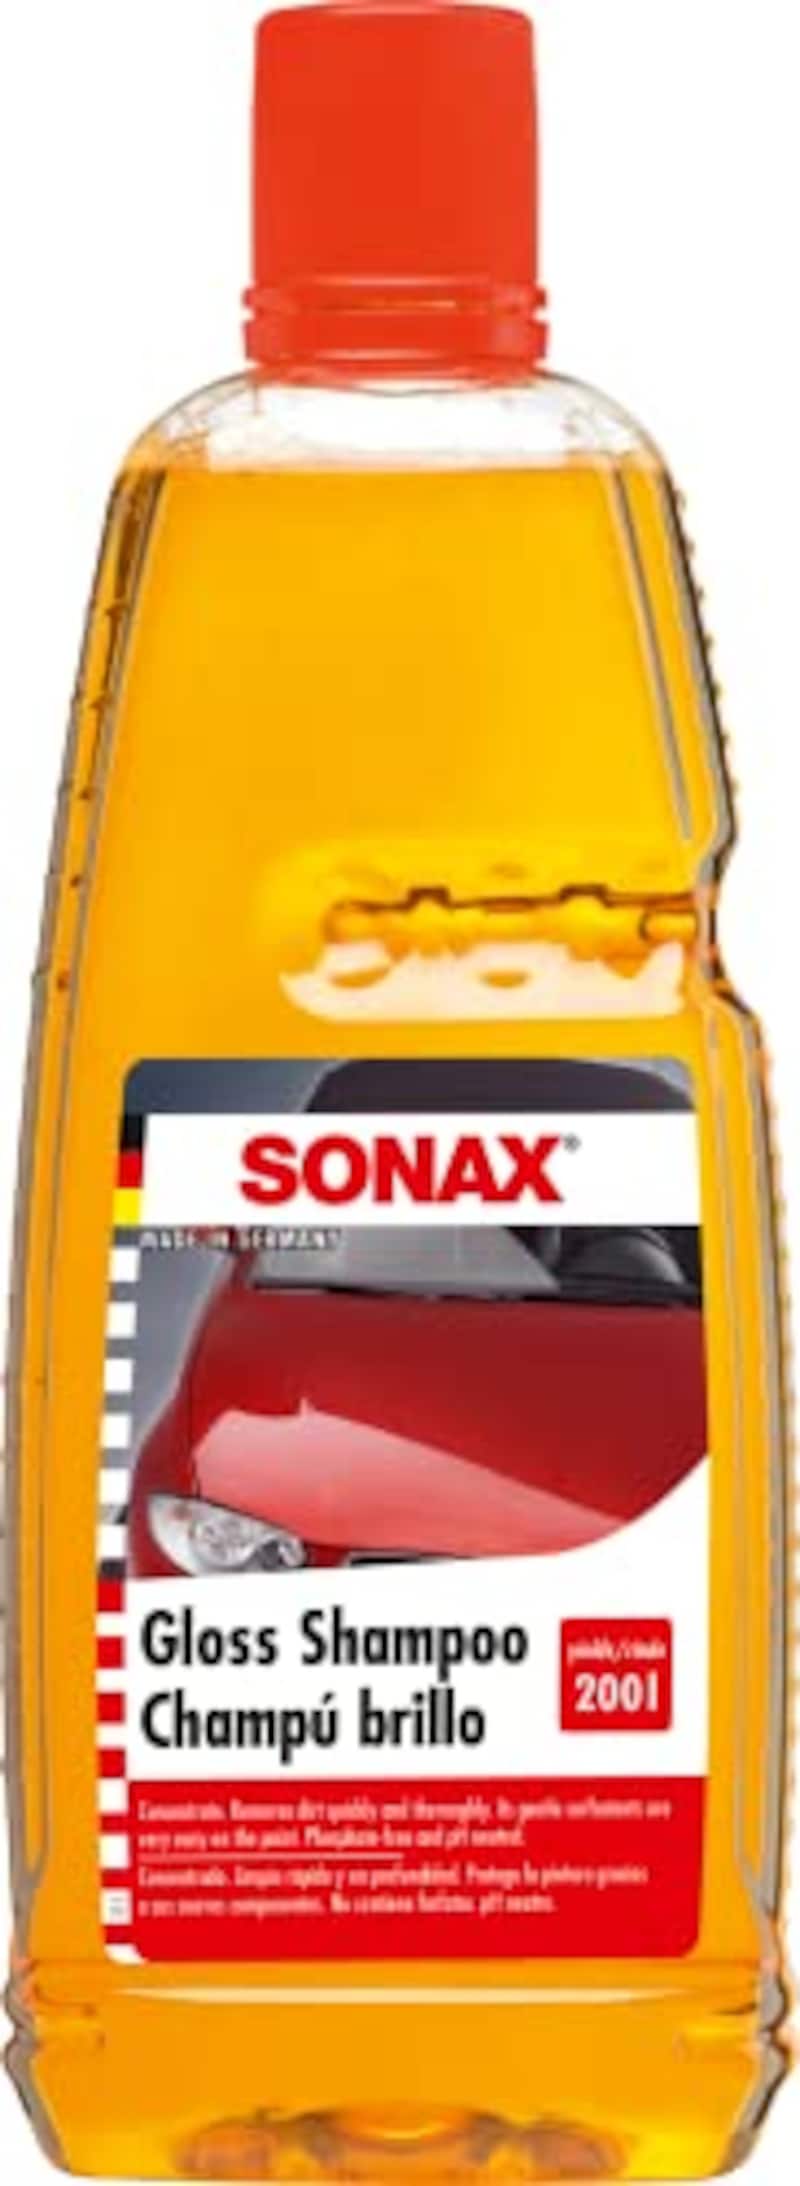 SONAX（ソナックス）,カーシャンプー グロスシャンプー